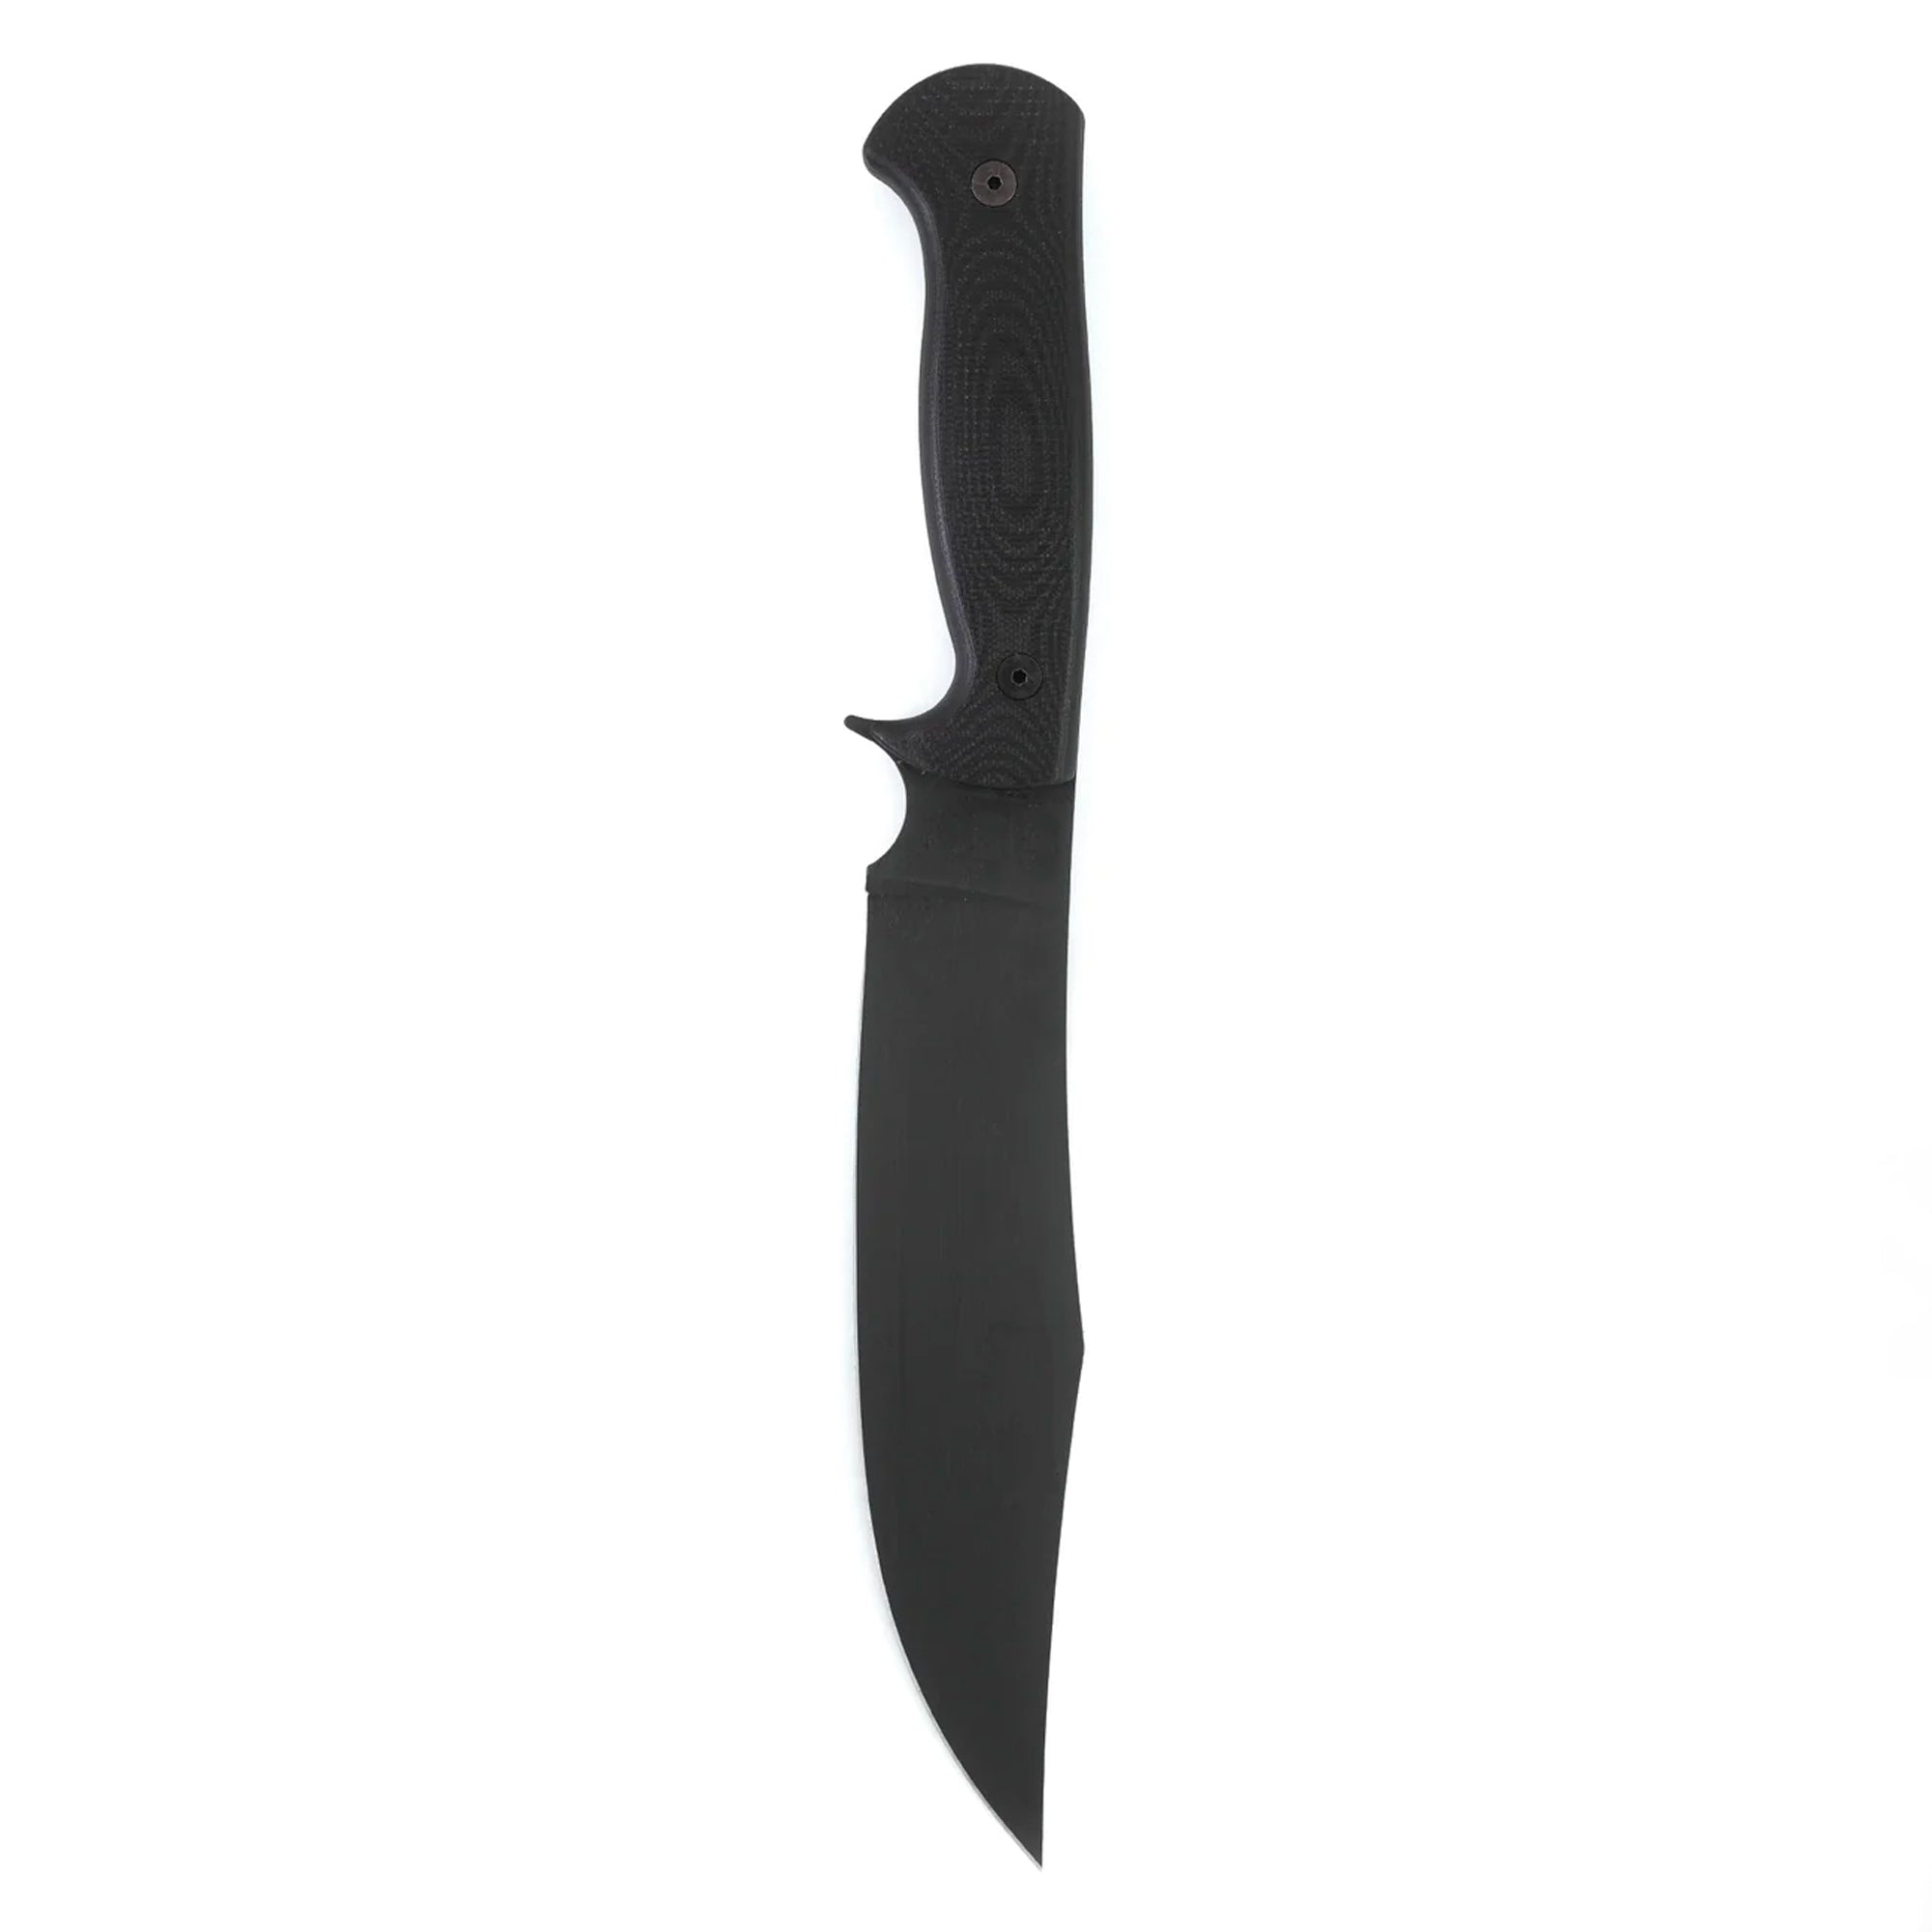 THE MARSHALL BUSHCRAFT KNIFE - BLACK